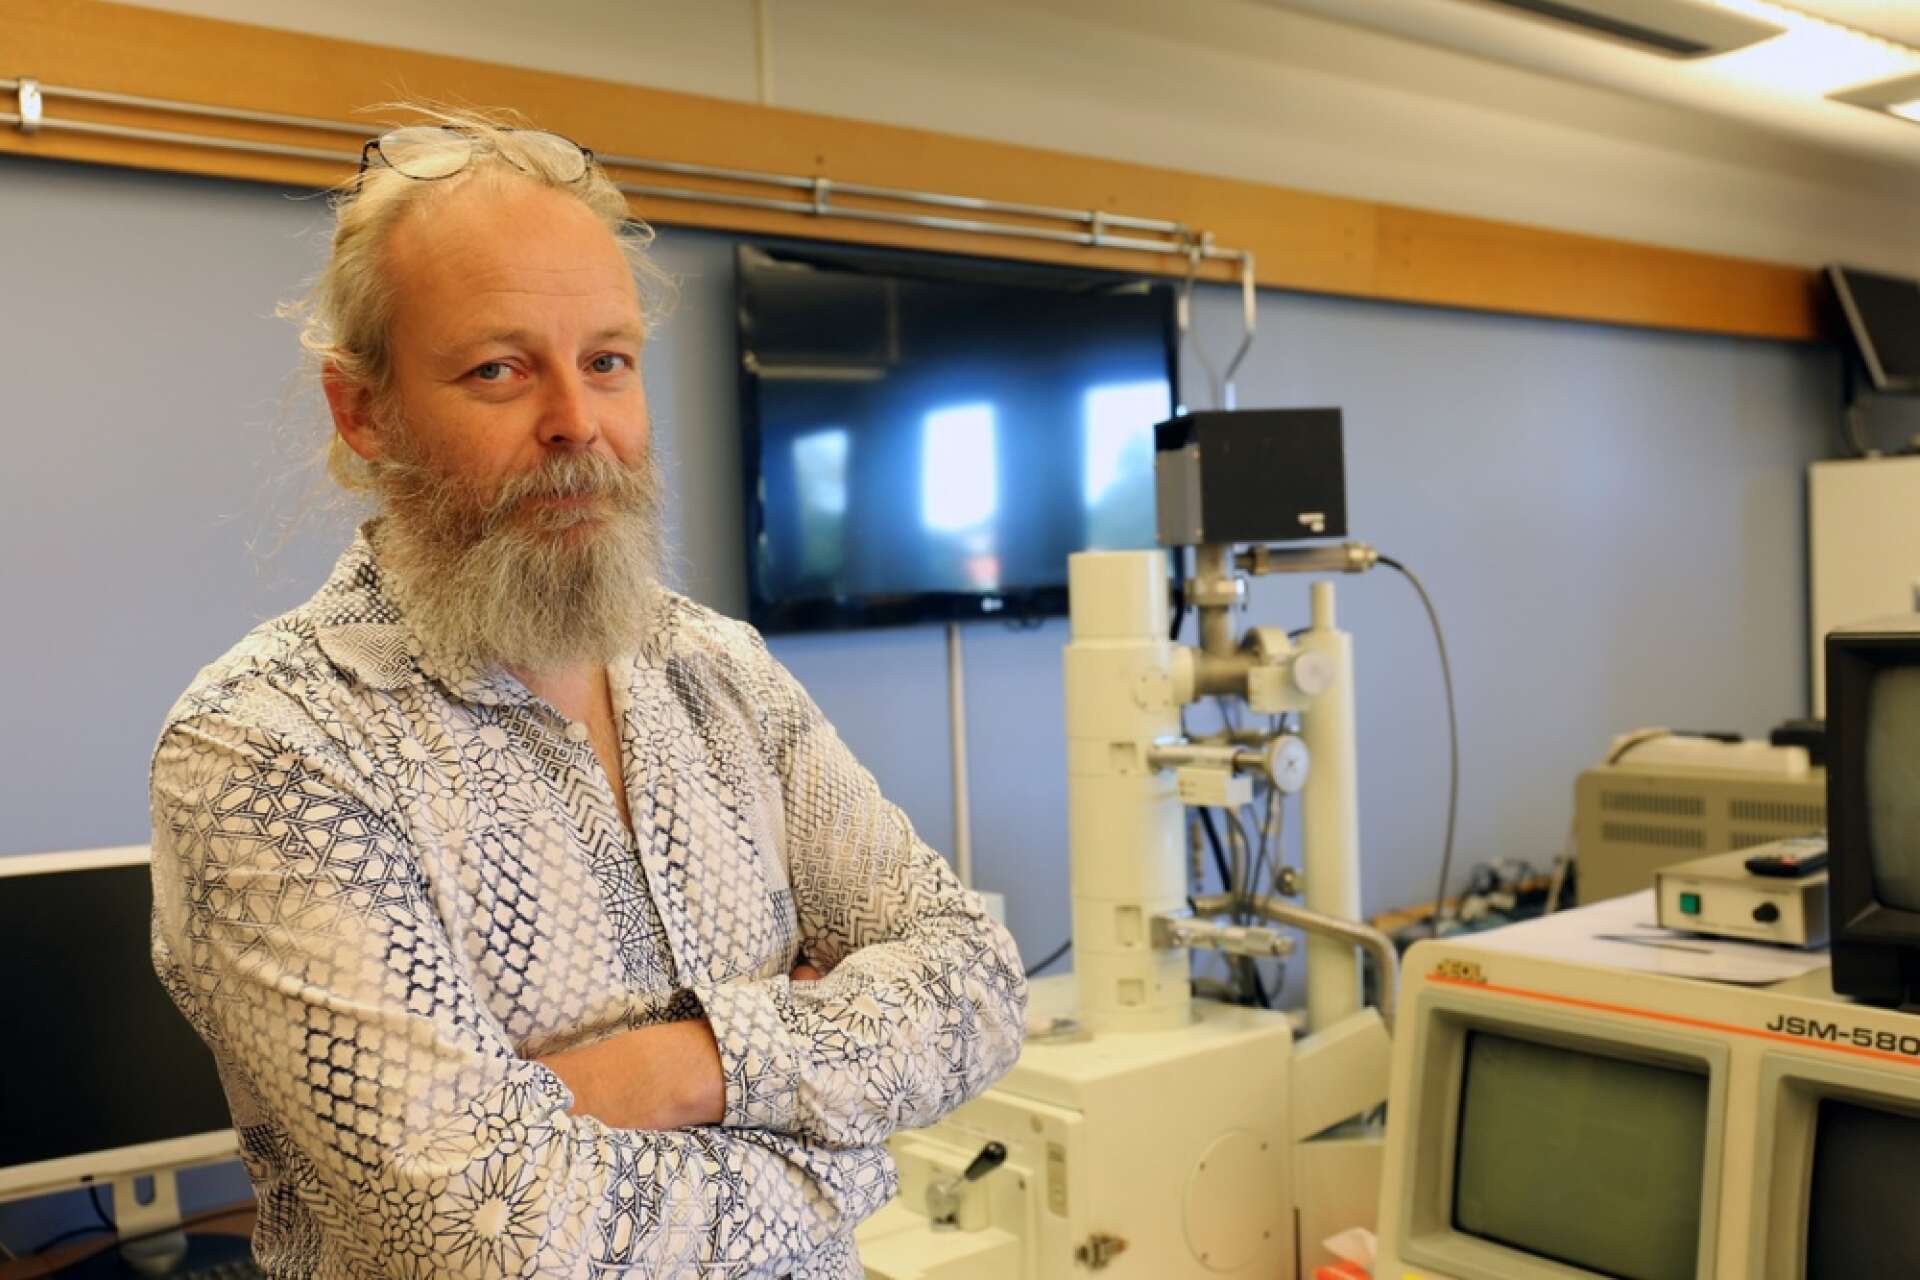 Mats Svensson är lektor på gymnasieskolan Katedralskolan i Skara.
Mats har doktorerat i fysiologisk botanik vid Uppsala universitet men har också en lärarexamen